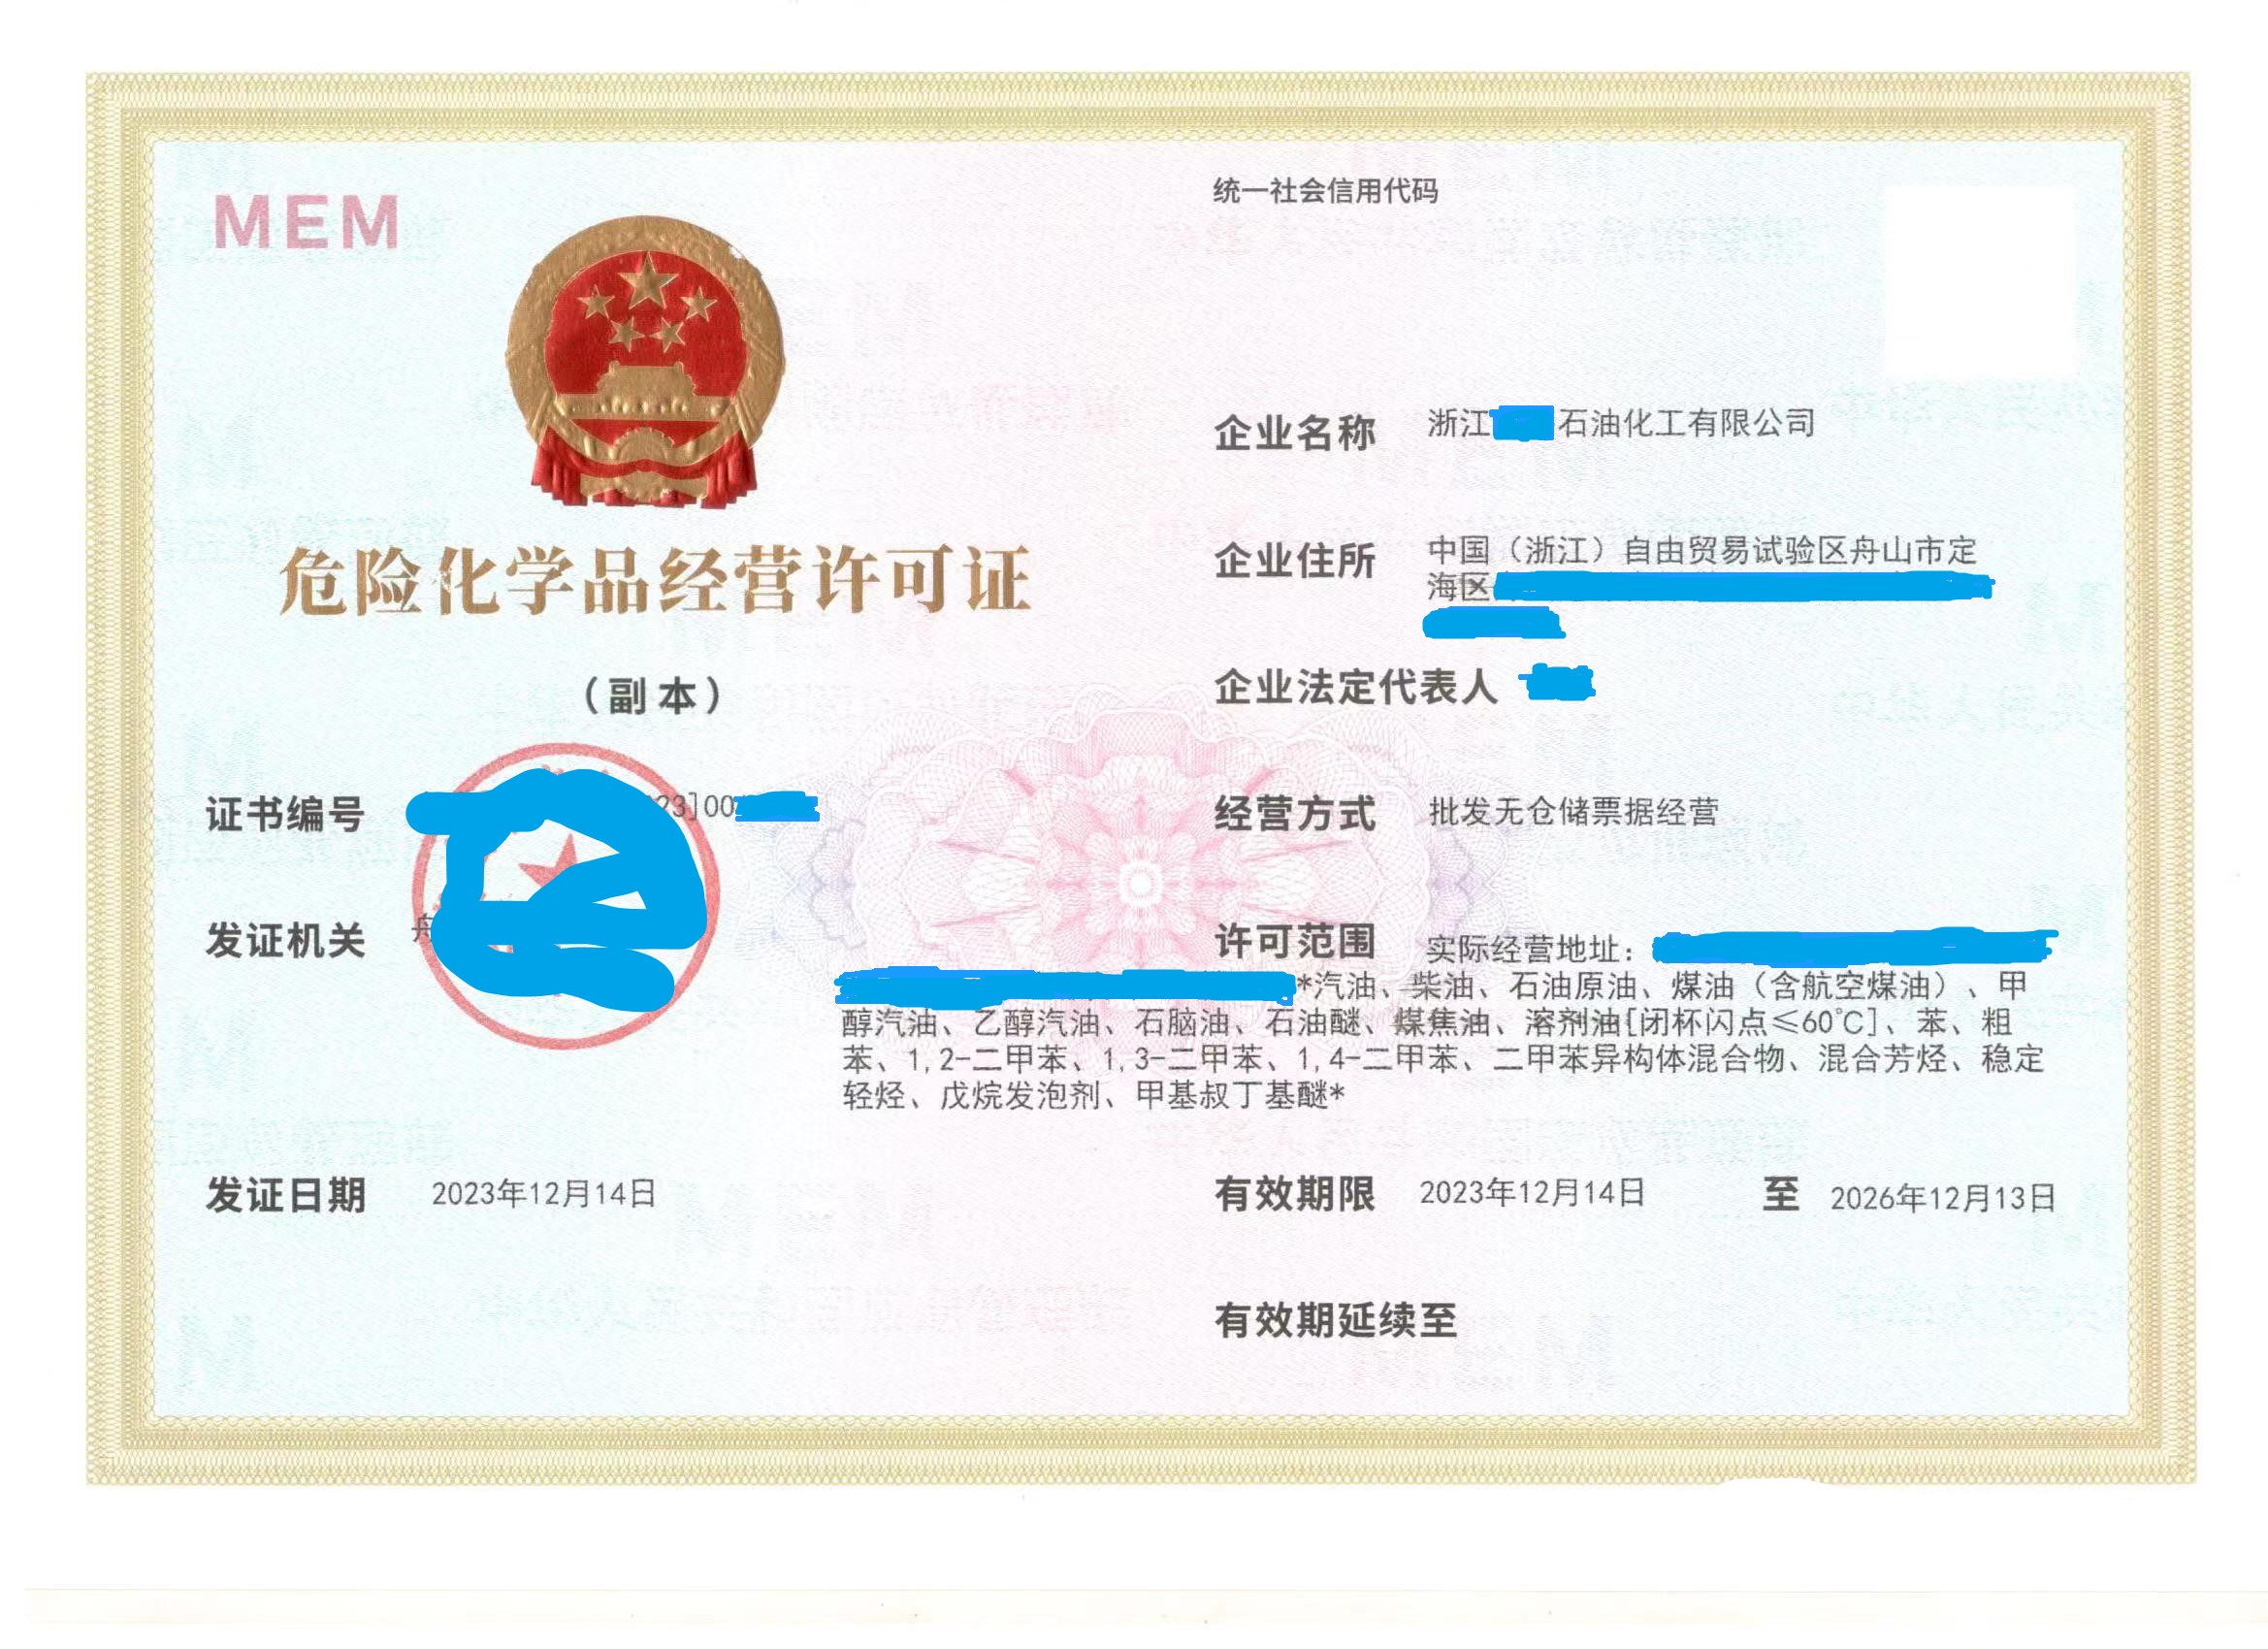 北京一般纳税人申请流程 注册公司需要多长时间